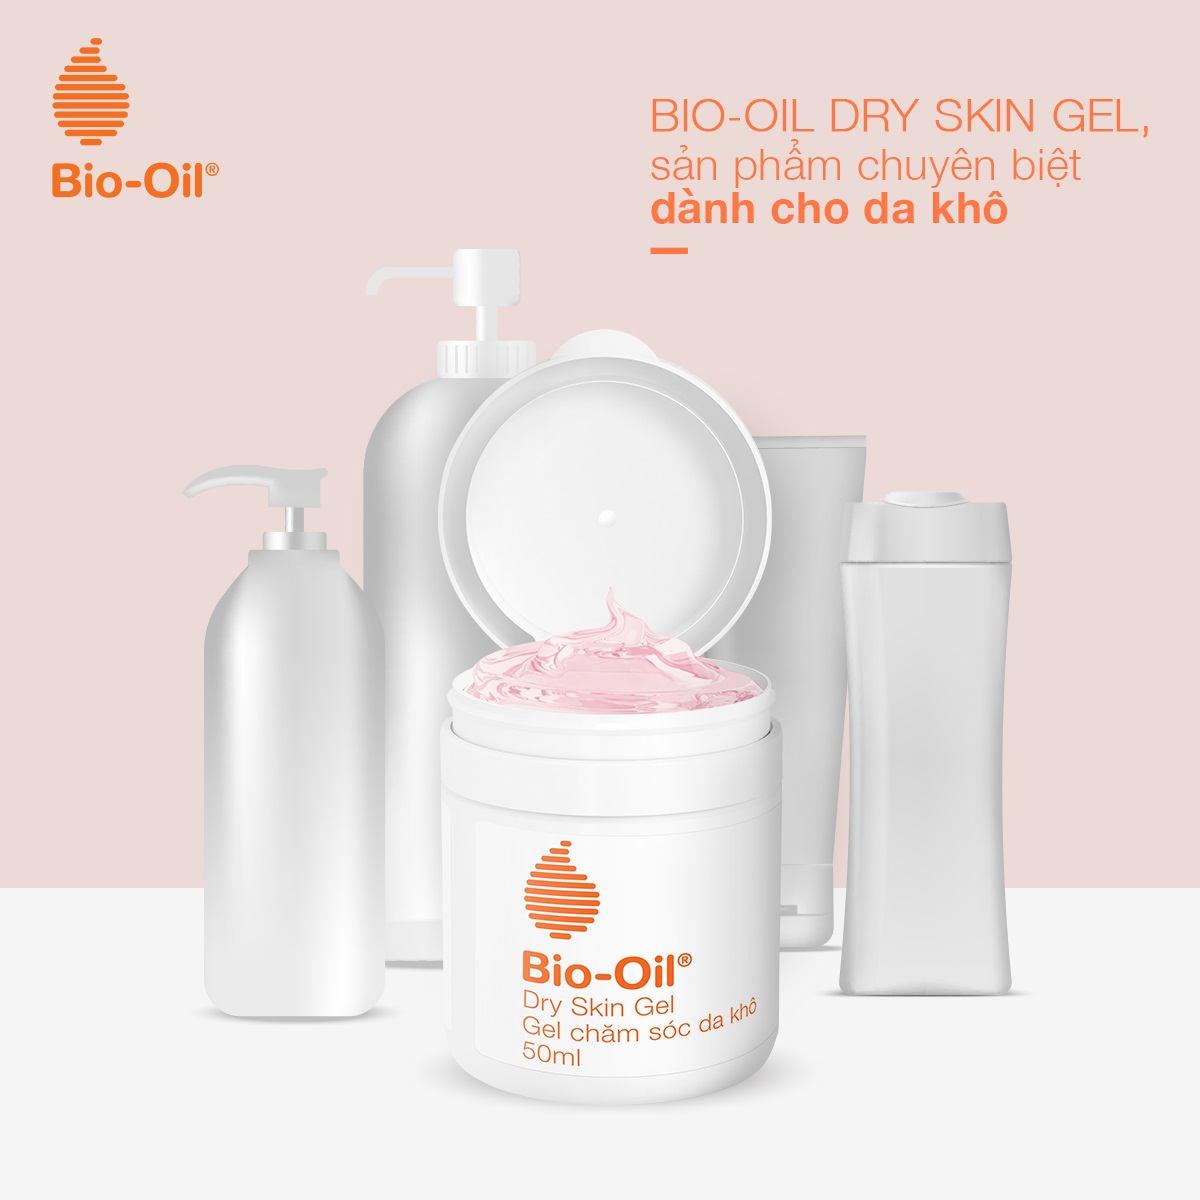 Gel Dưỡng Bio-Oil Dry Skin Gel giúp giảm tình trạng da khô bong tróc